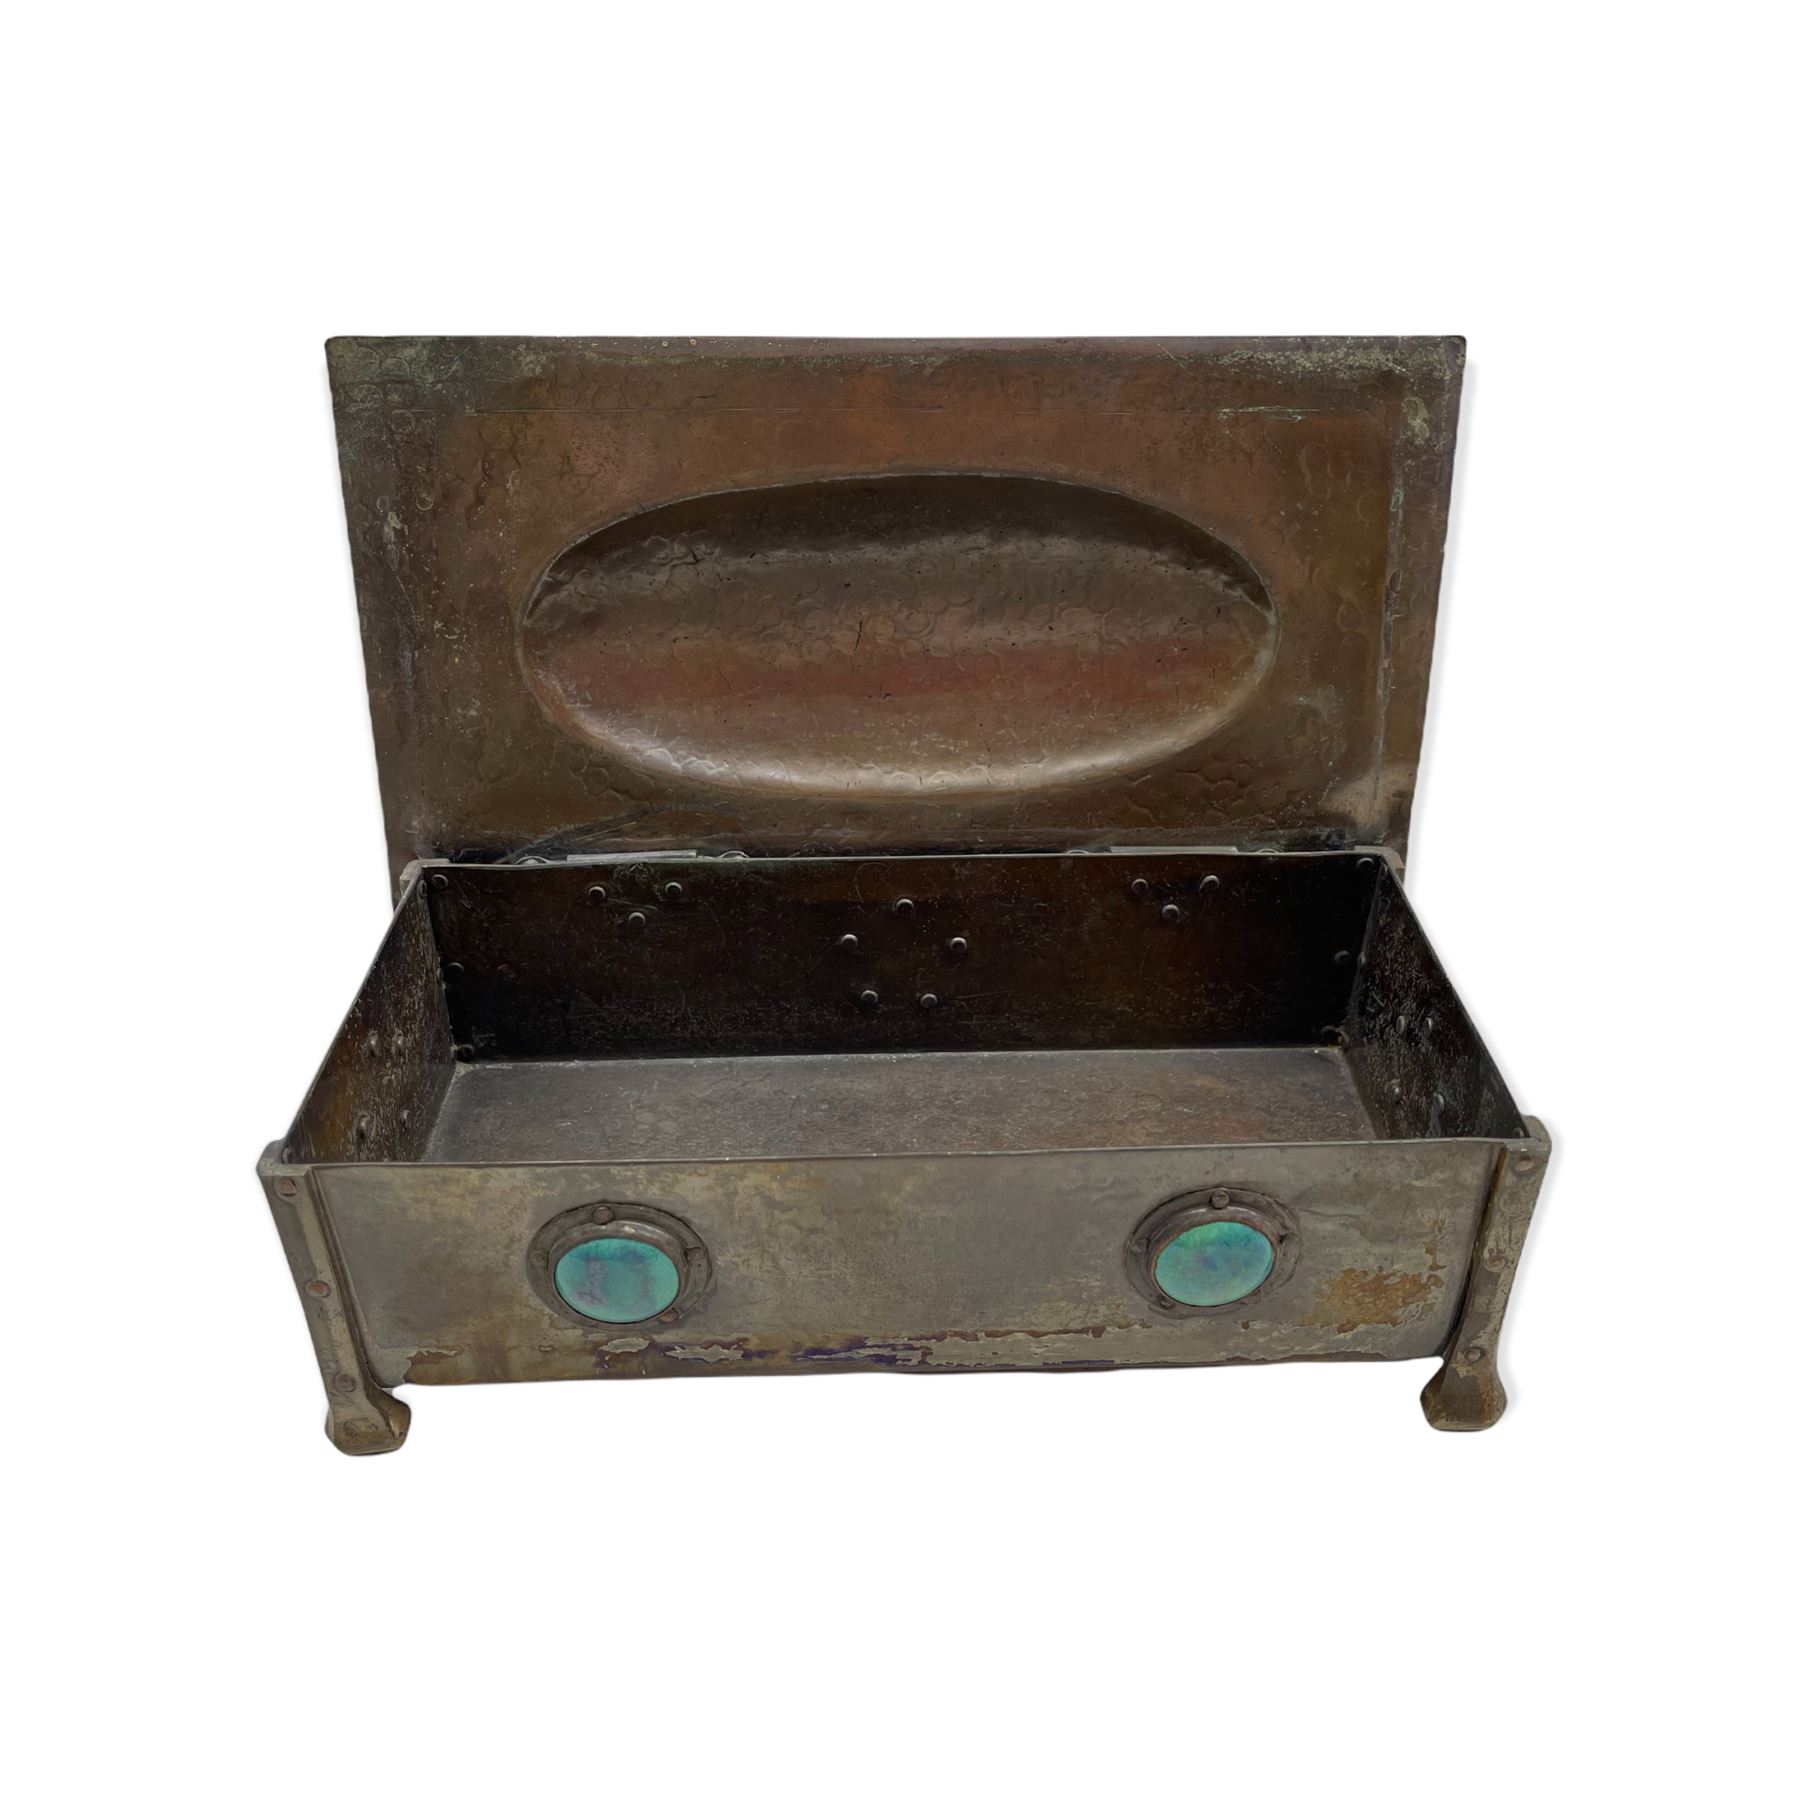 Arts & Crafts hammered copper casket - Image 4 of 6